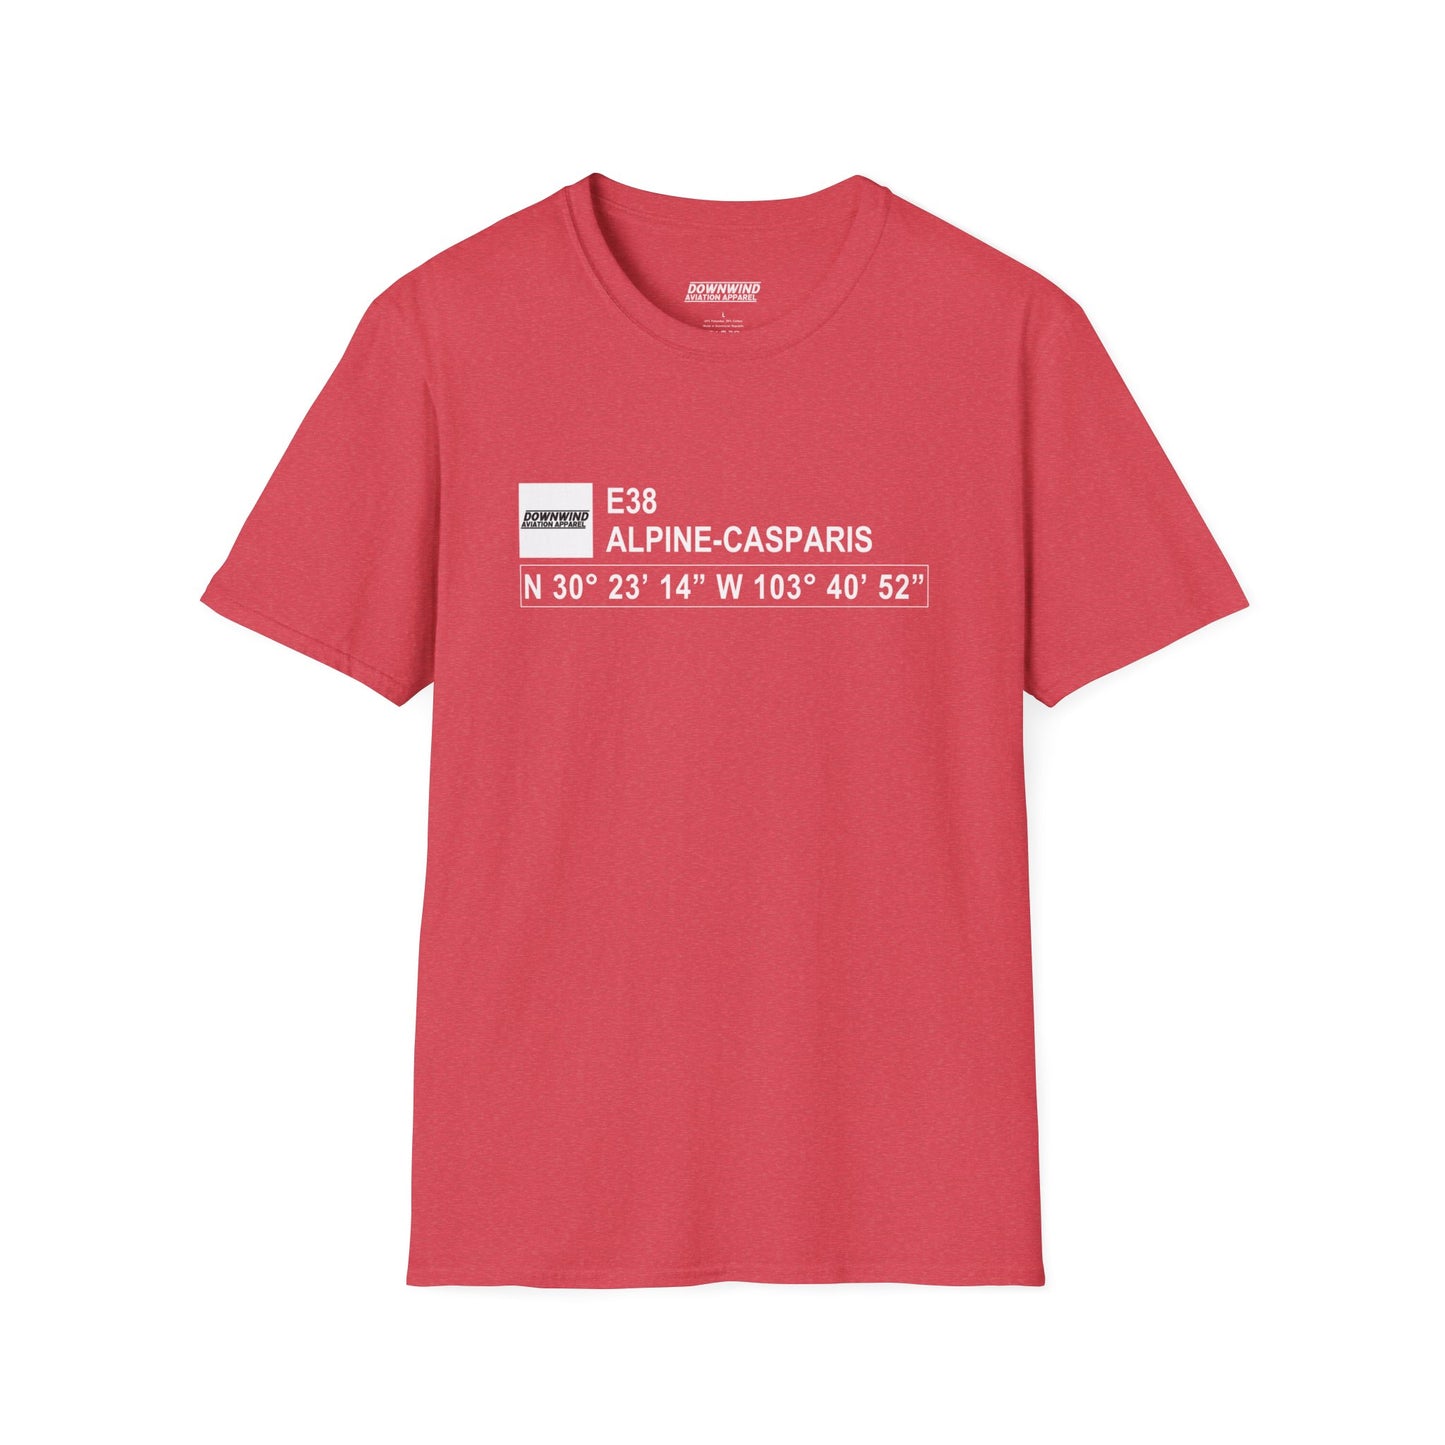 E38 / Alpine-Casparis T-Shirt